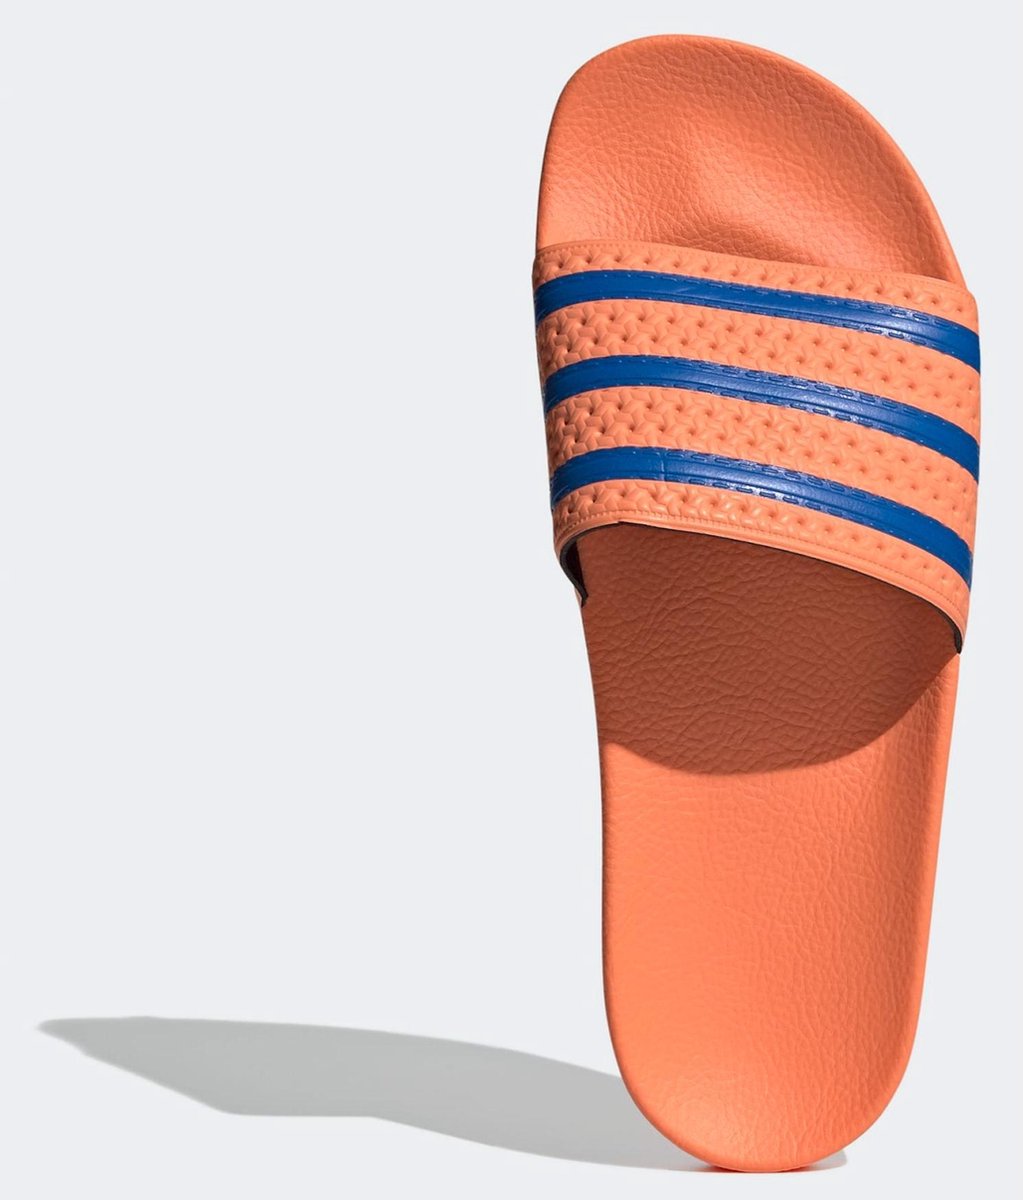 Surrey bereiken Koreaans adidas Slippers - Maat 40.5 - Unisex - oranje/ blauw | bol.com